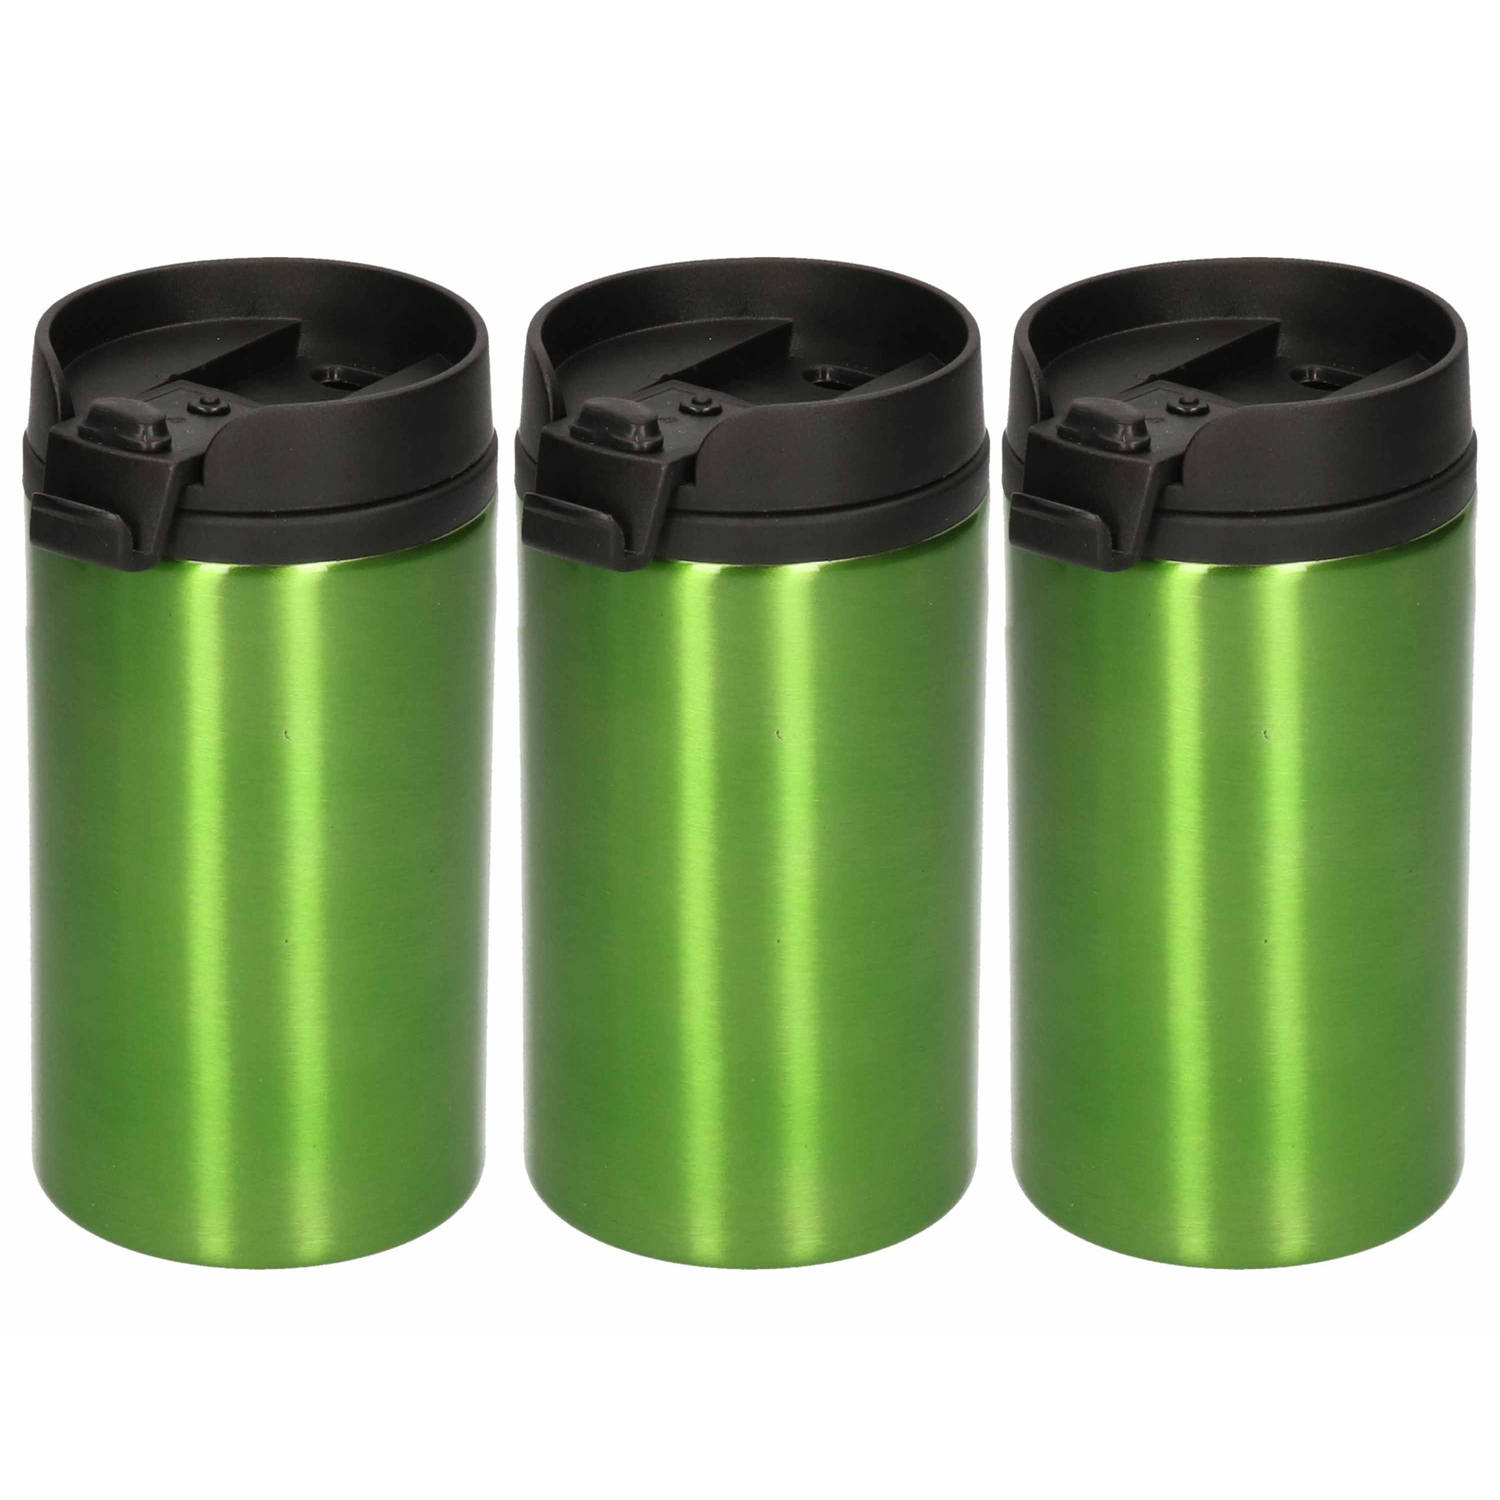 5x Warmhoudbekers metallic-warm houd bekers groen 320 ml RVS Isoleerbekers-thermosbekers voor onderw